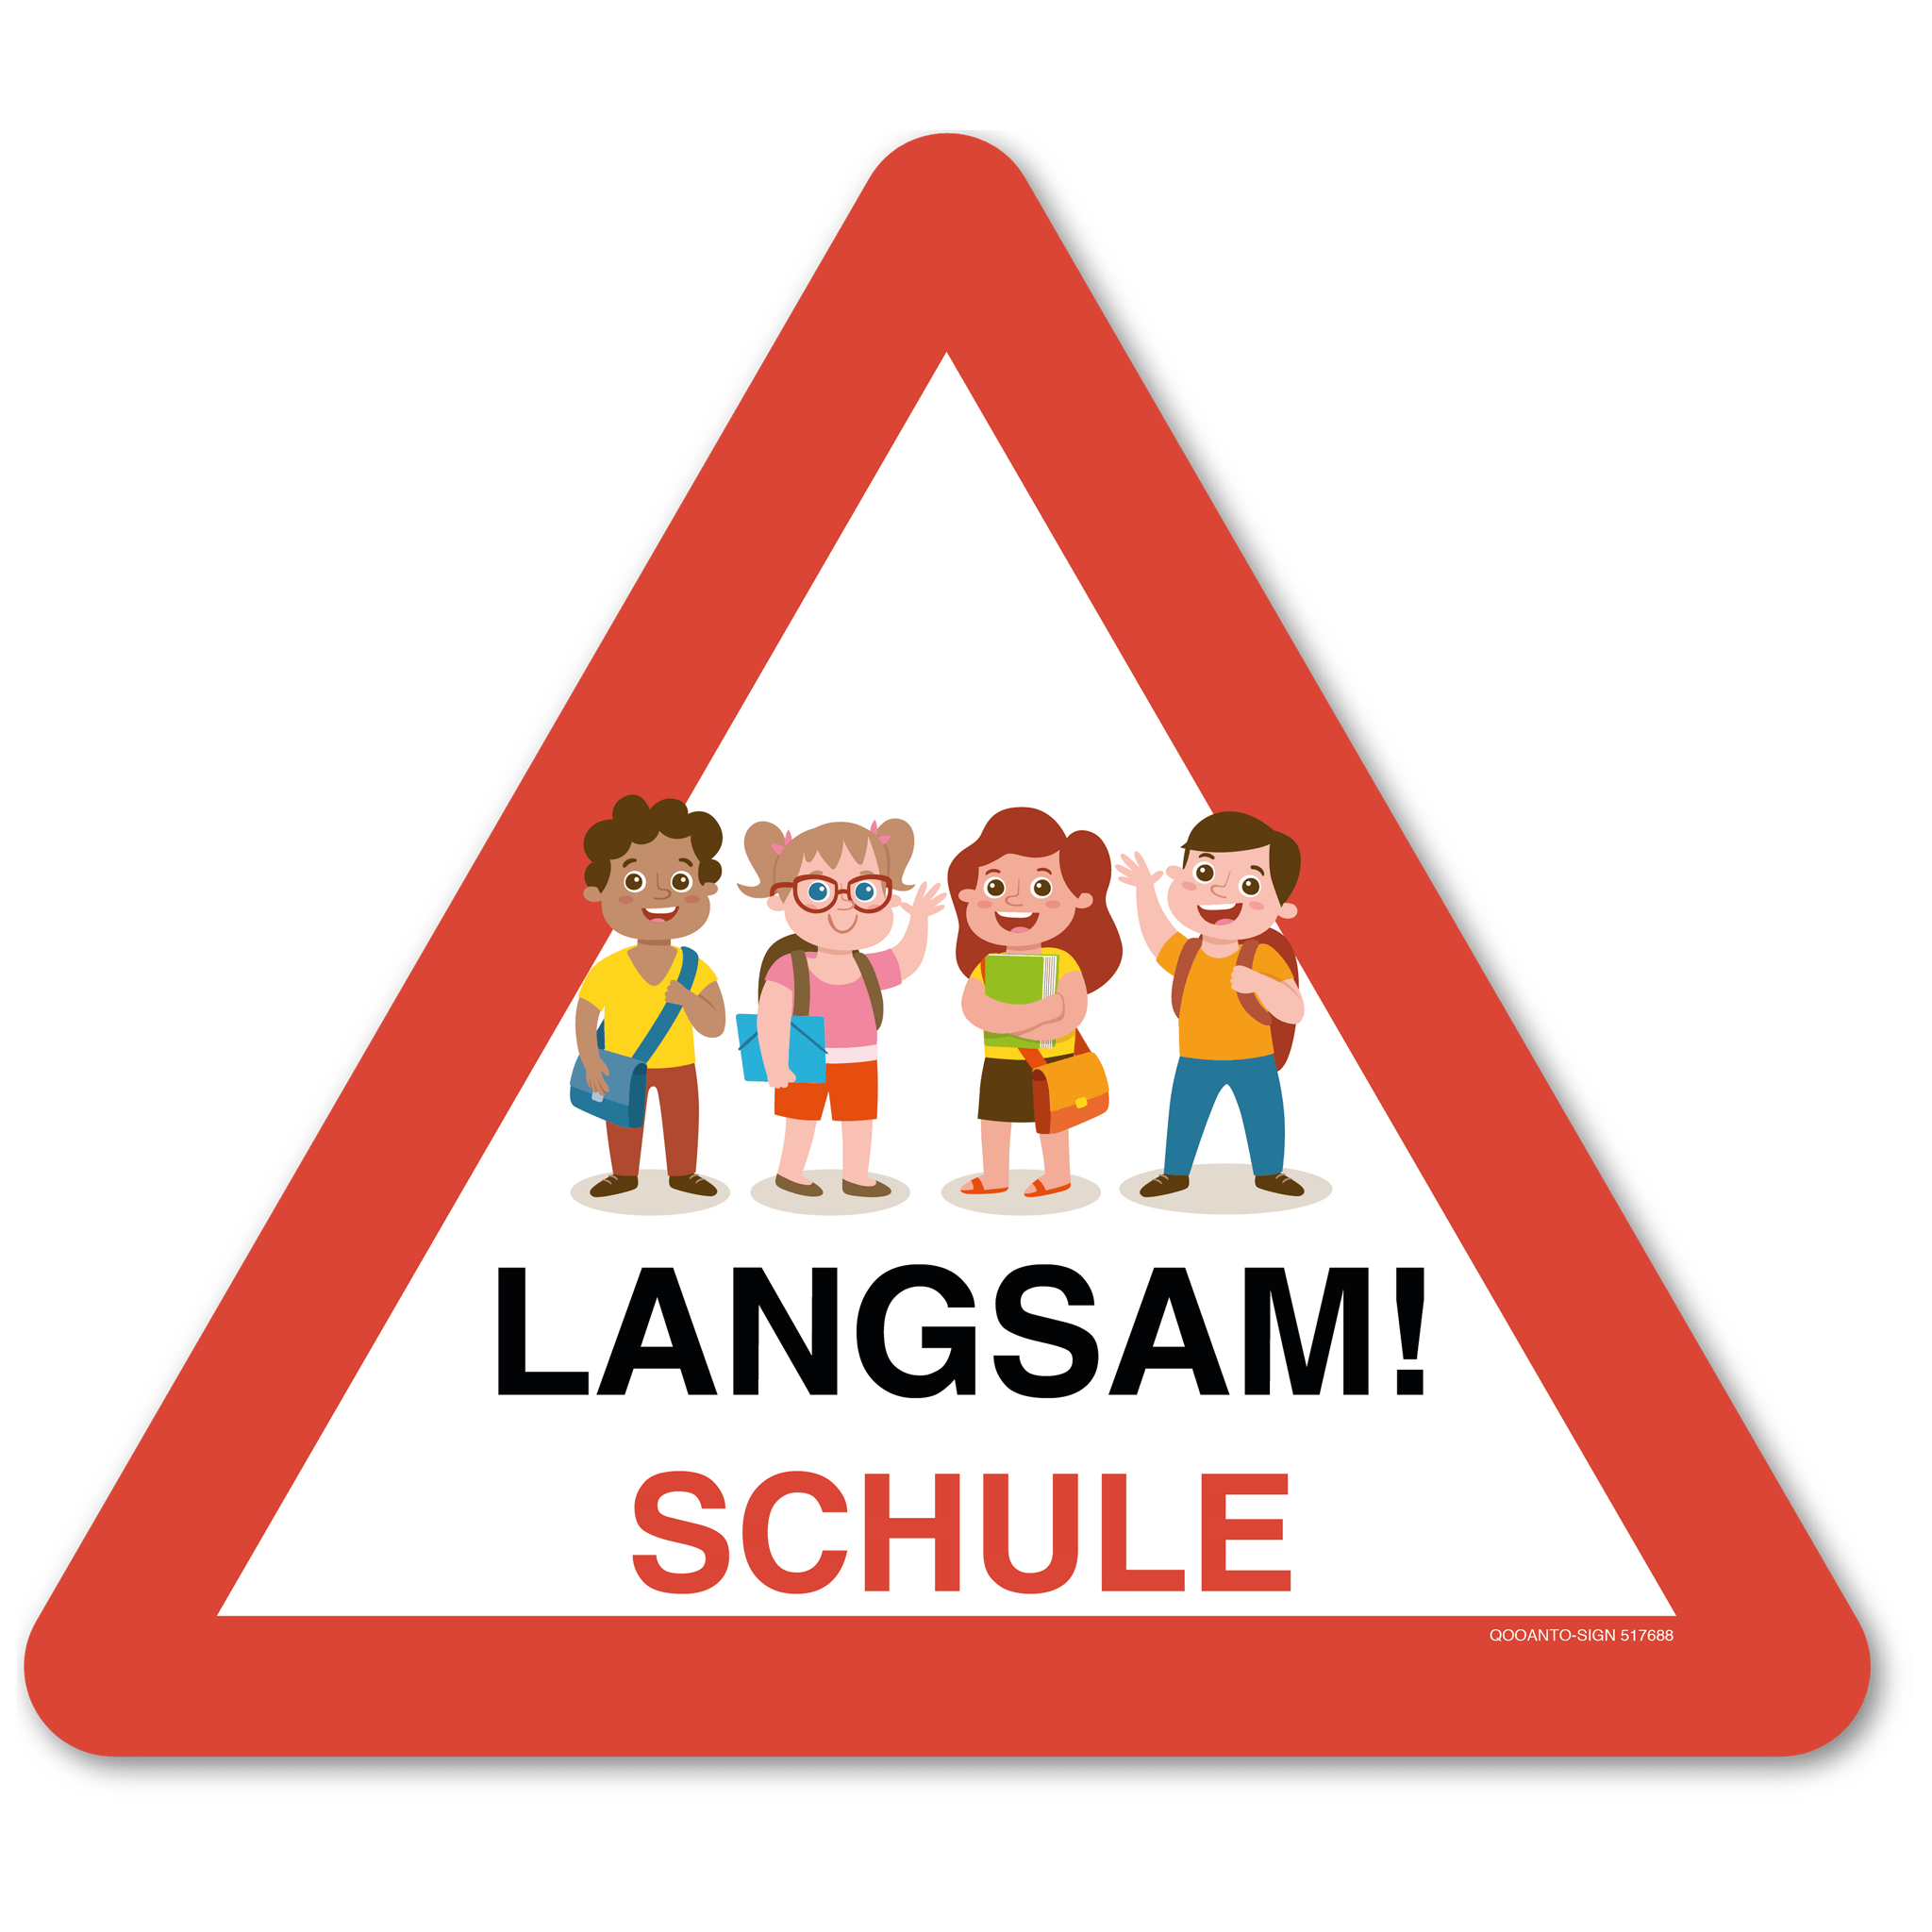 Warndreieck Langsam! Schule Kinder mit Schultasche, Schild oder Aufkleber